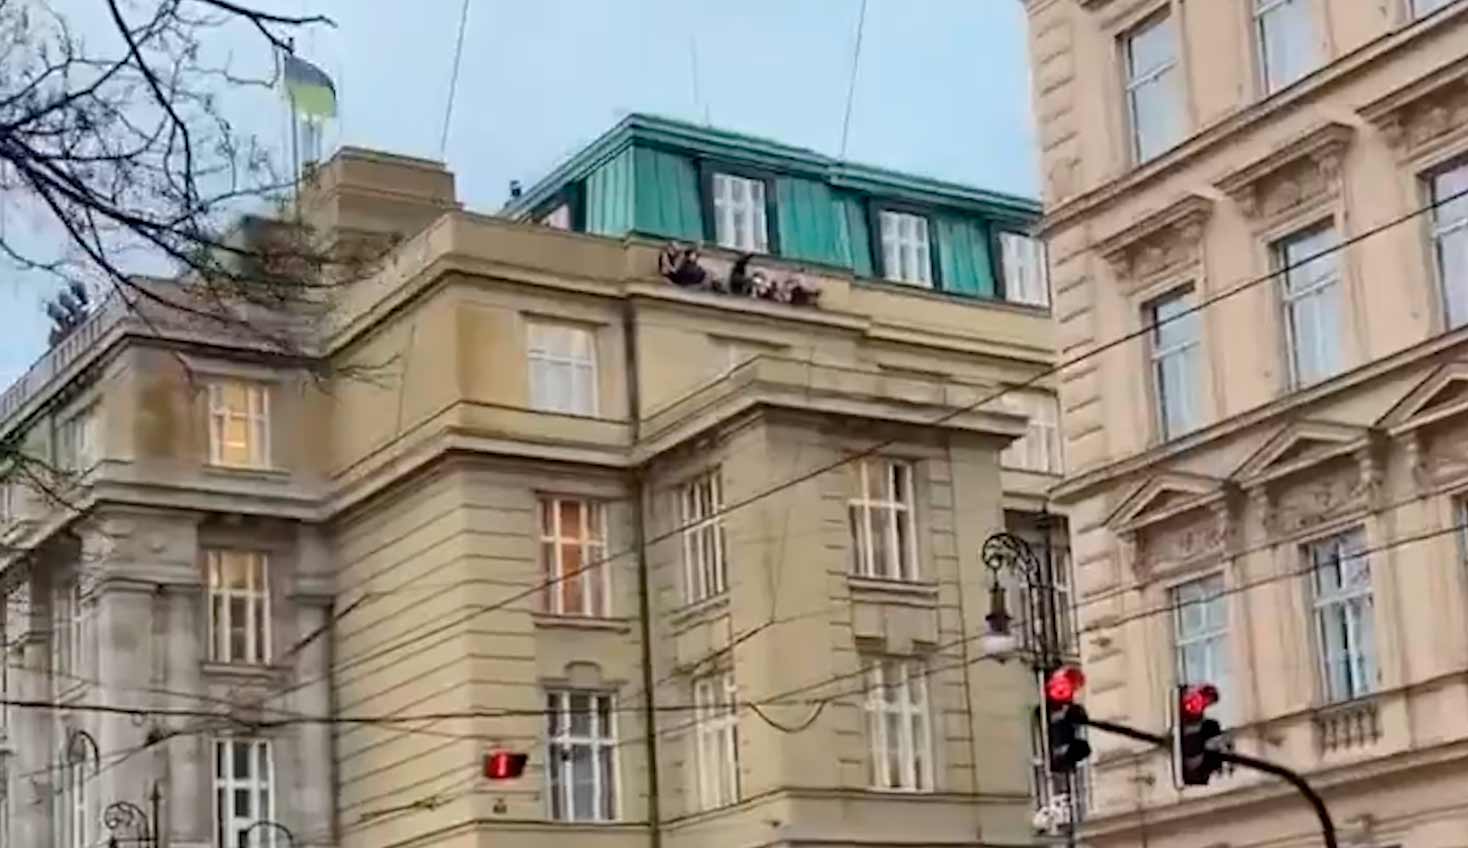 Πυροβολισμοί στην Πράγα κόβουν τη ζωή σε 11 άτομα μετά το άνοιγμα πυρός από ένοπλο σε πανεπιστήμιο. Φωτογραφίες και βίντεο: Twitter @BabakTaghvaee1